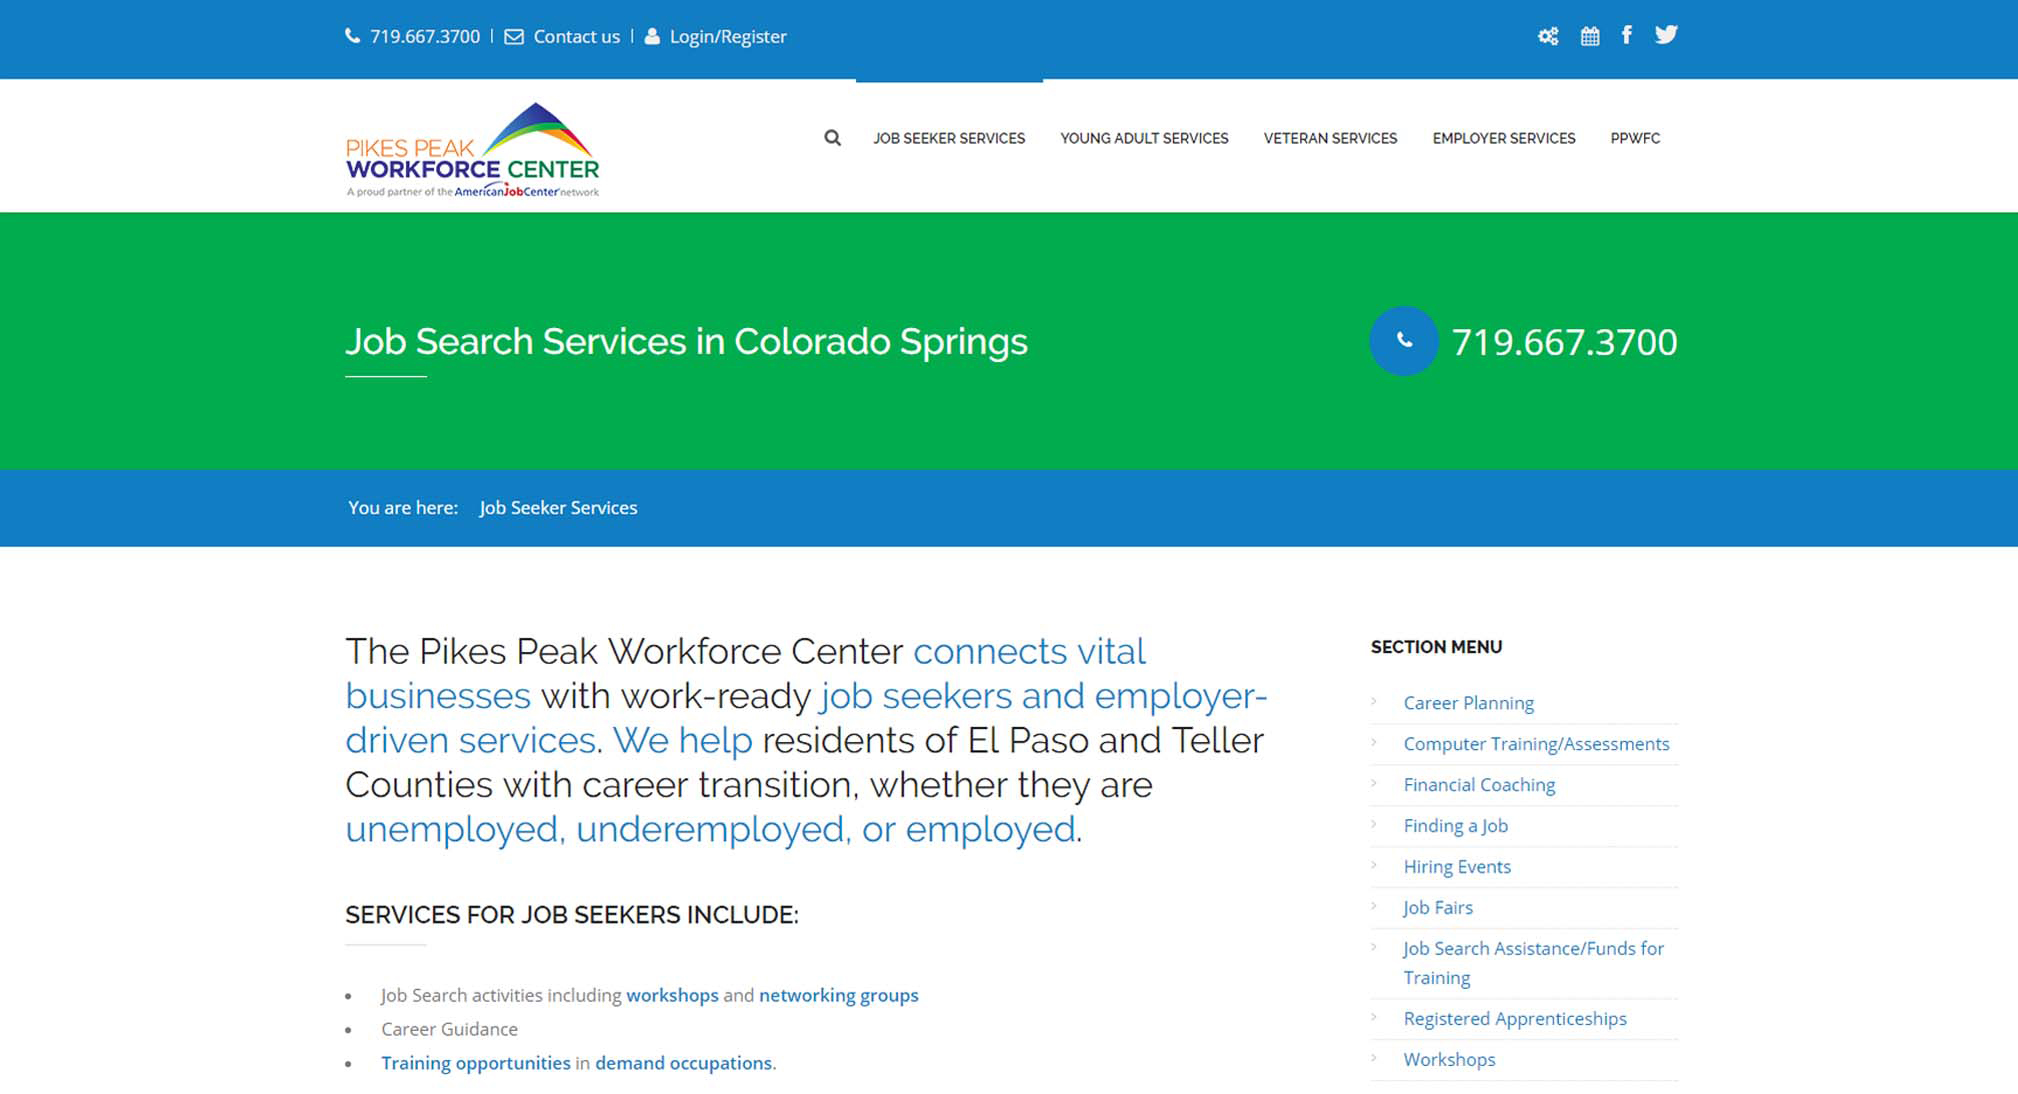 Pikes Peak Workforce Center website design and development